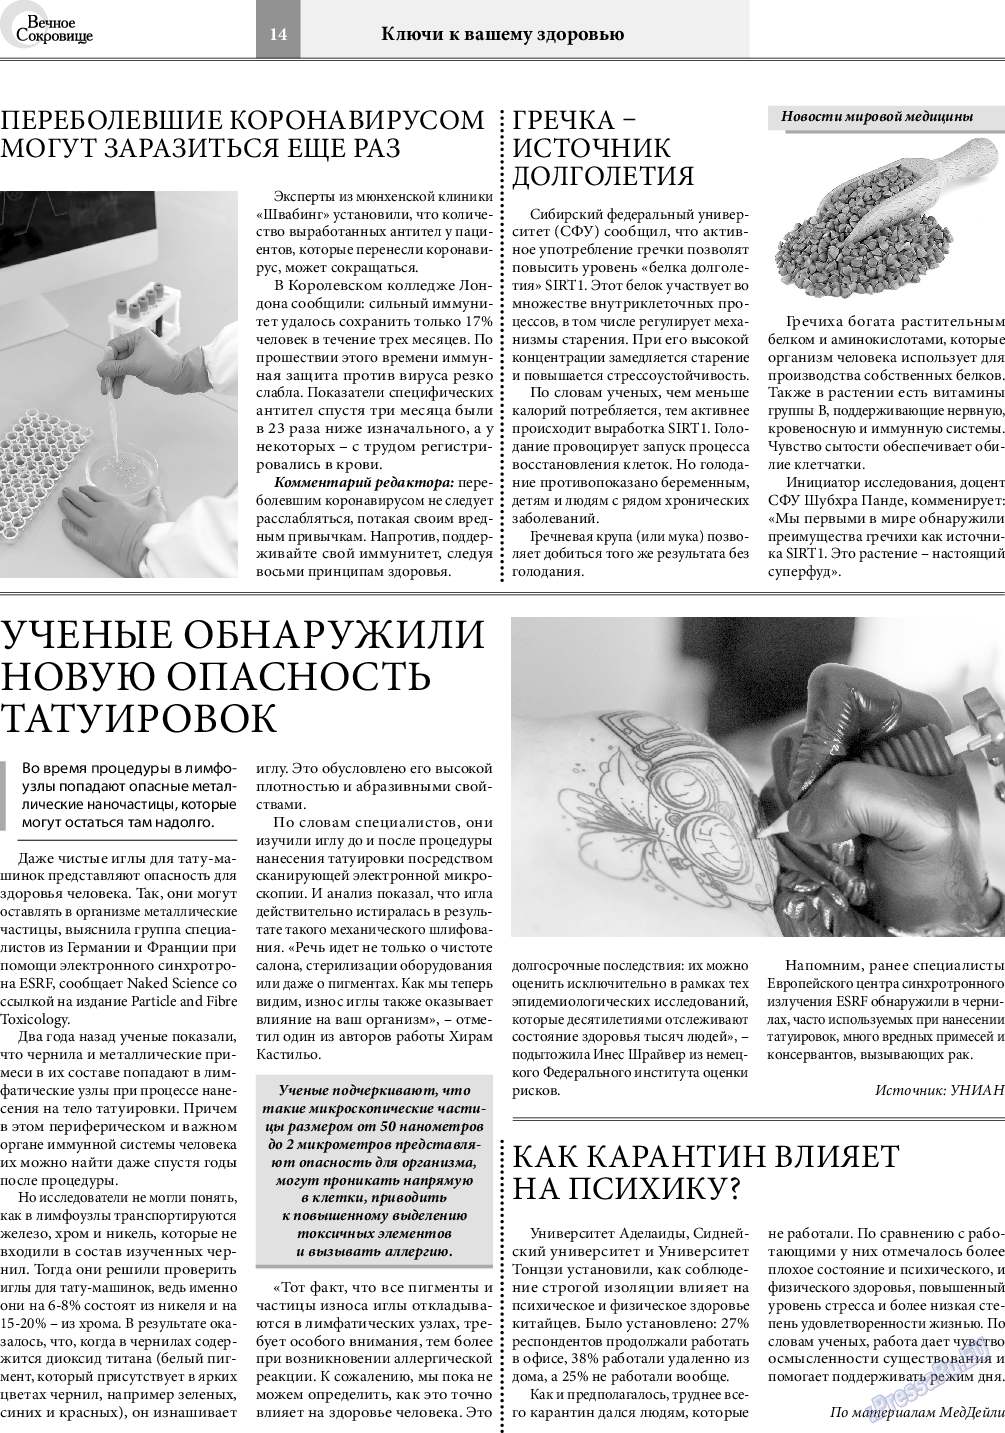 Вечное сокровище, газета. 2020 №6 стр.14